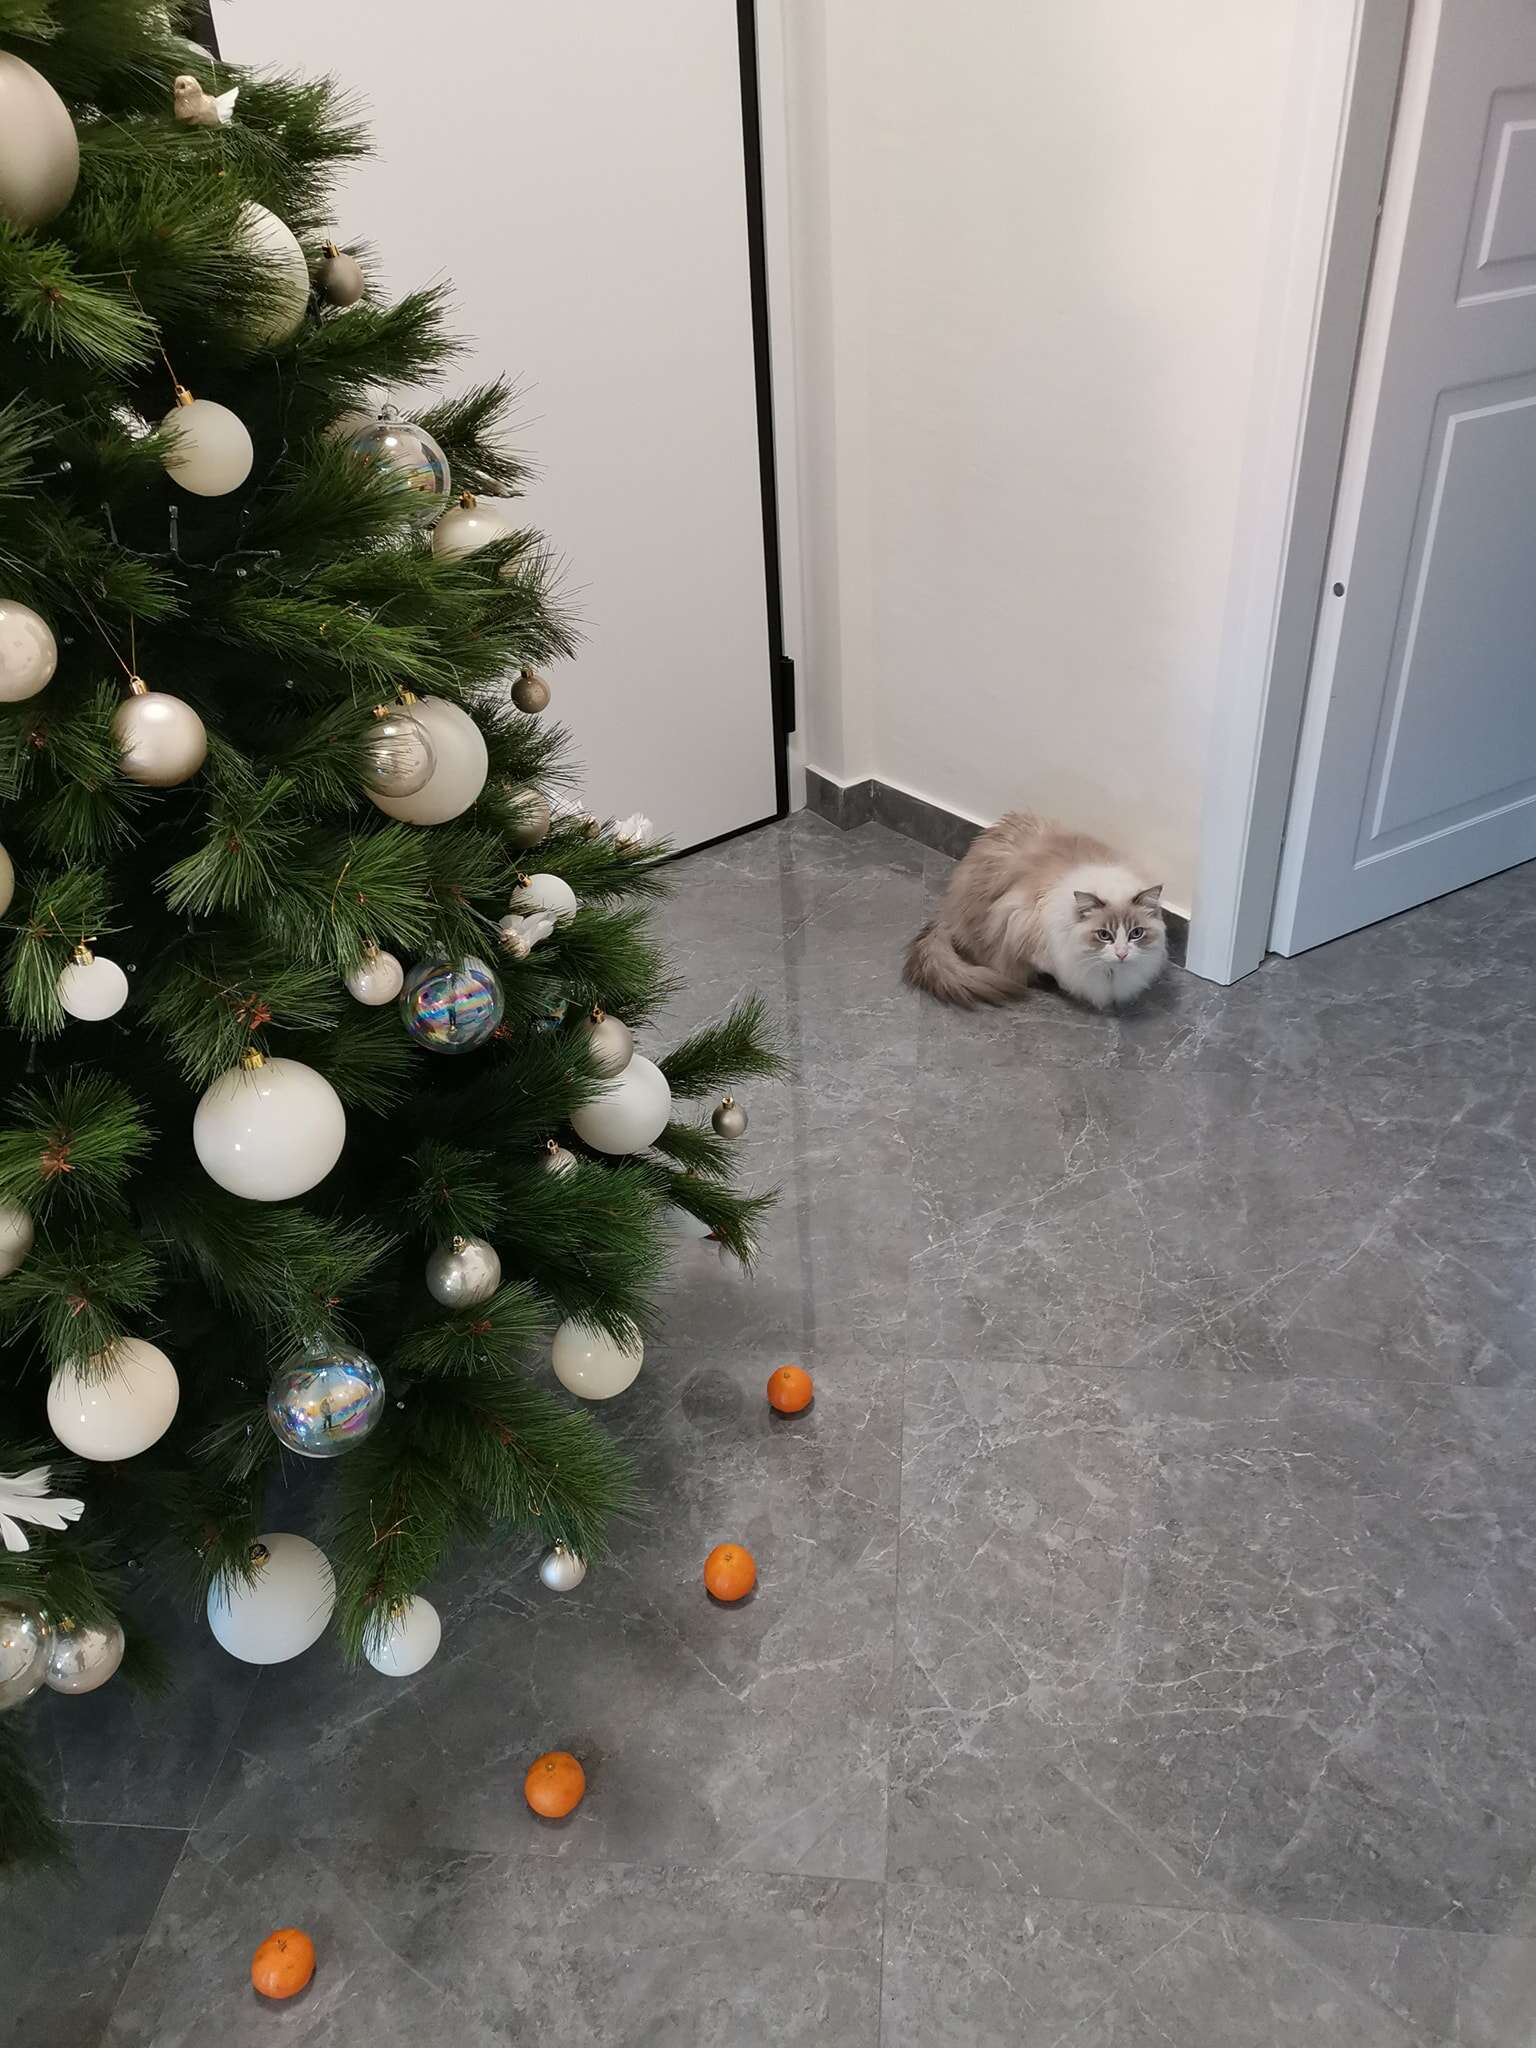 cat afraid of tangerines